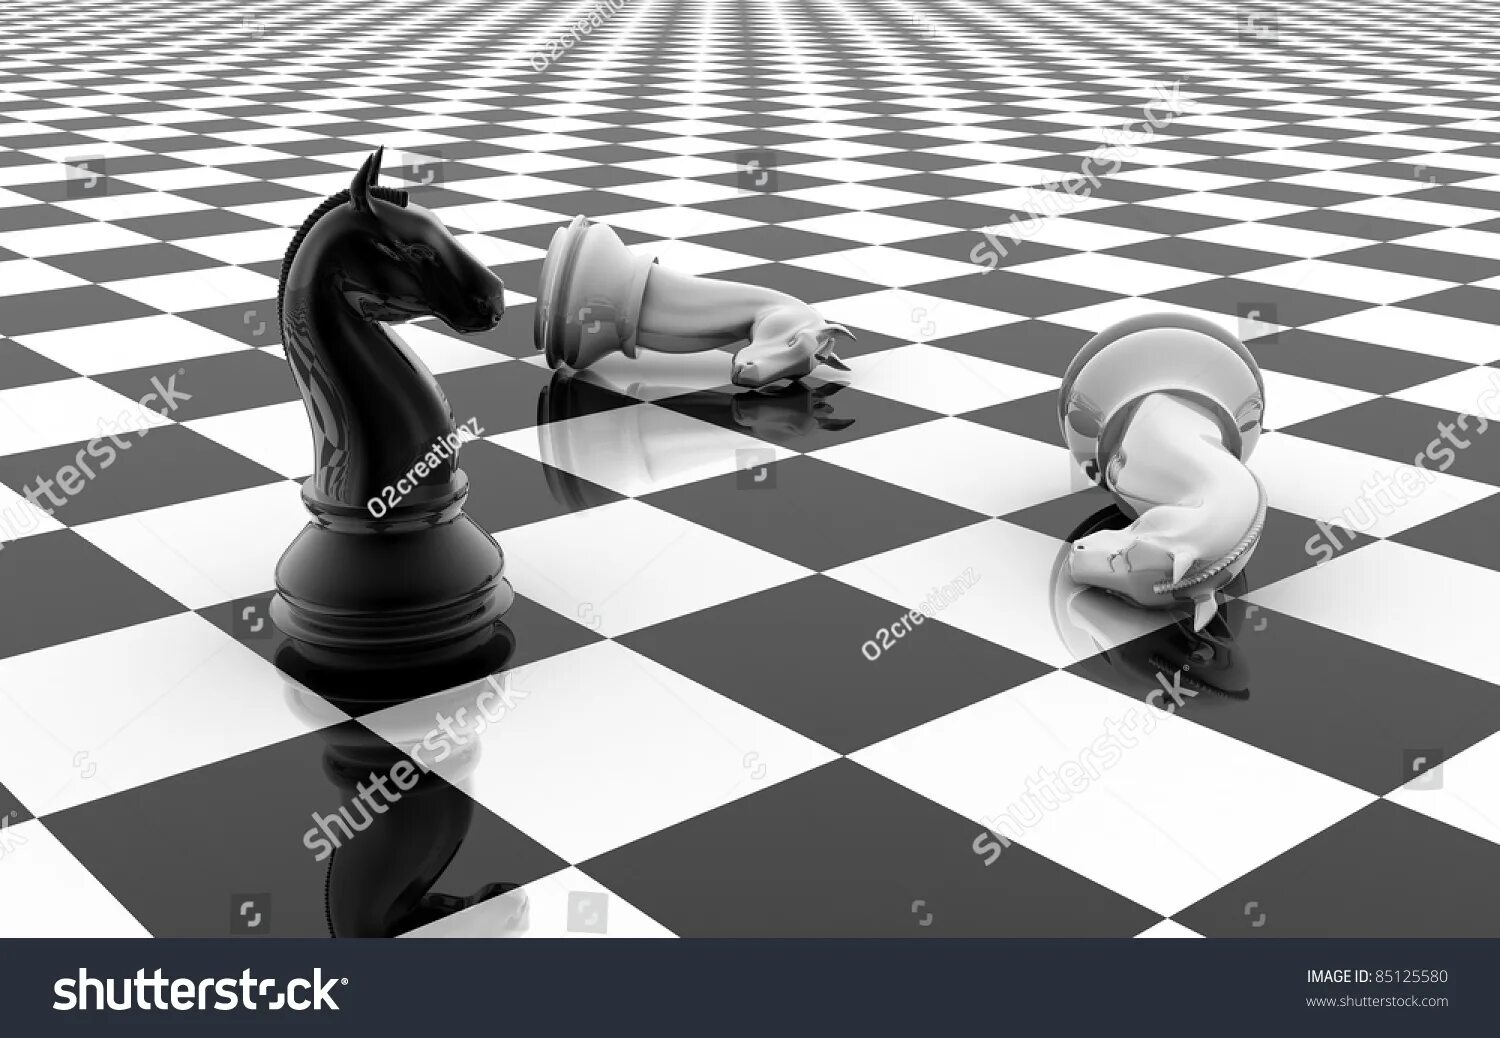 На шахматной доске 5 белых фигур. Конь на шахматной доске. Шахматная фигура конь. Конт на шахматной доске. Шахматный конь черный.